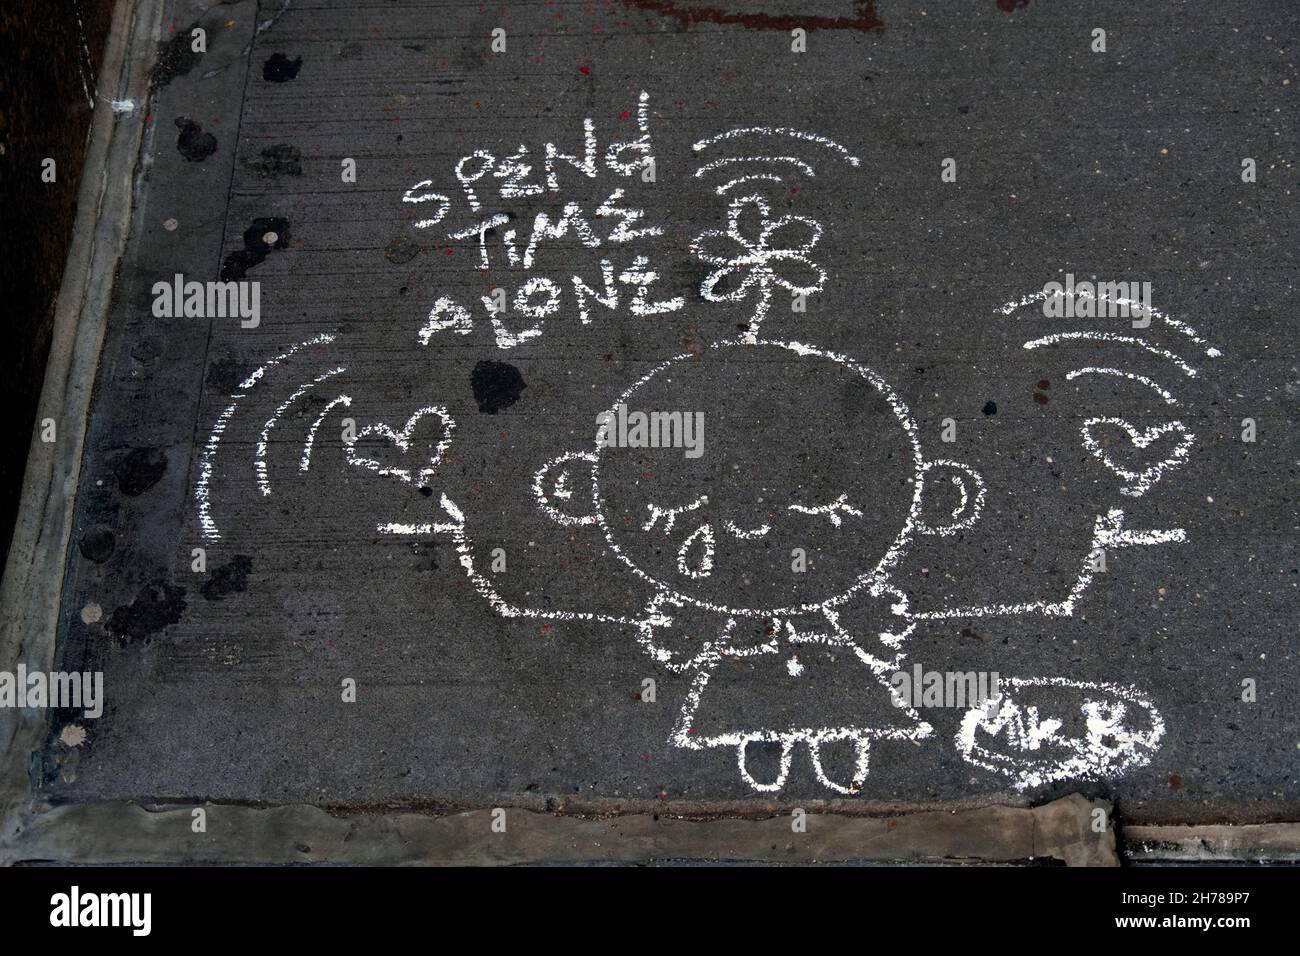 Un dessin de craie sur un trottoir dans Greenwich Village suggère que nous passons du temps seul.À New York. Banque D'Images